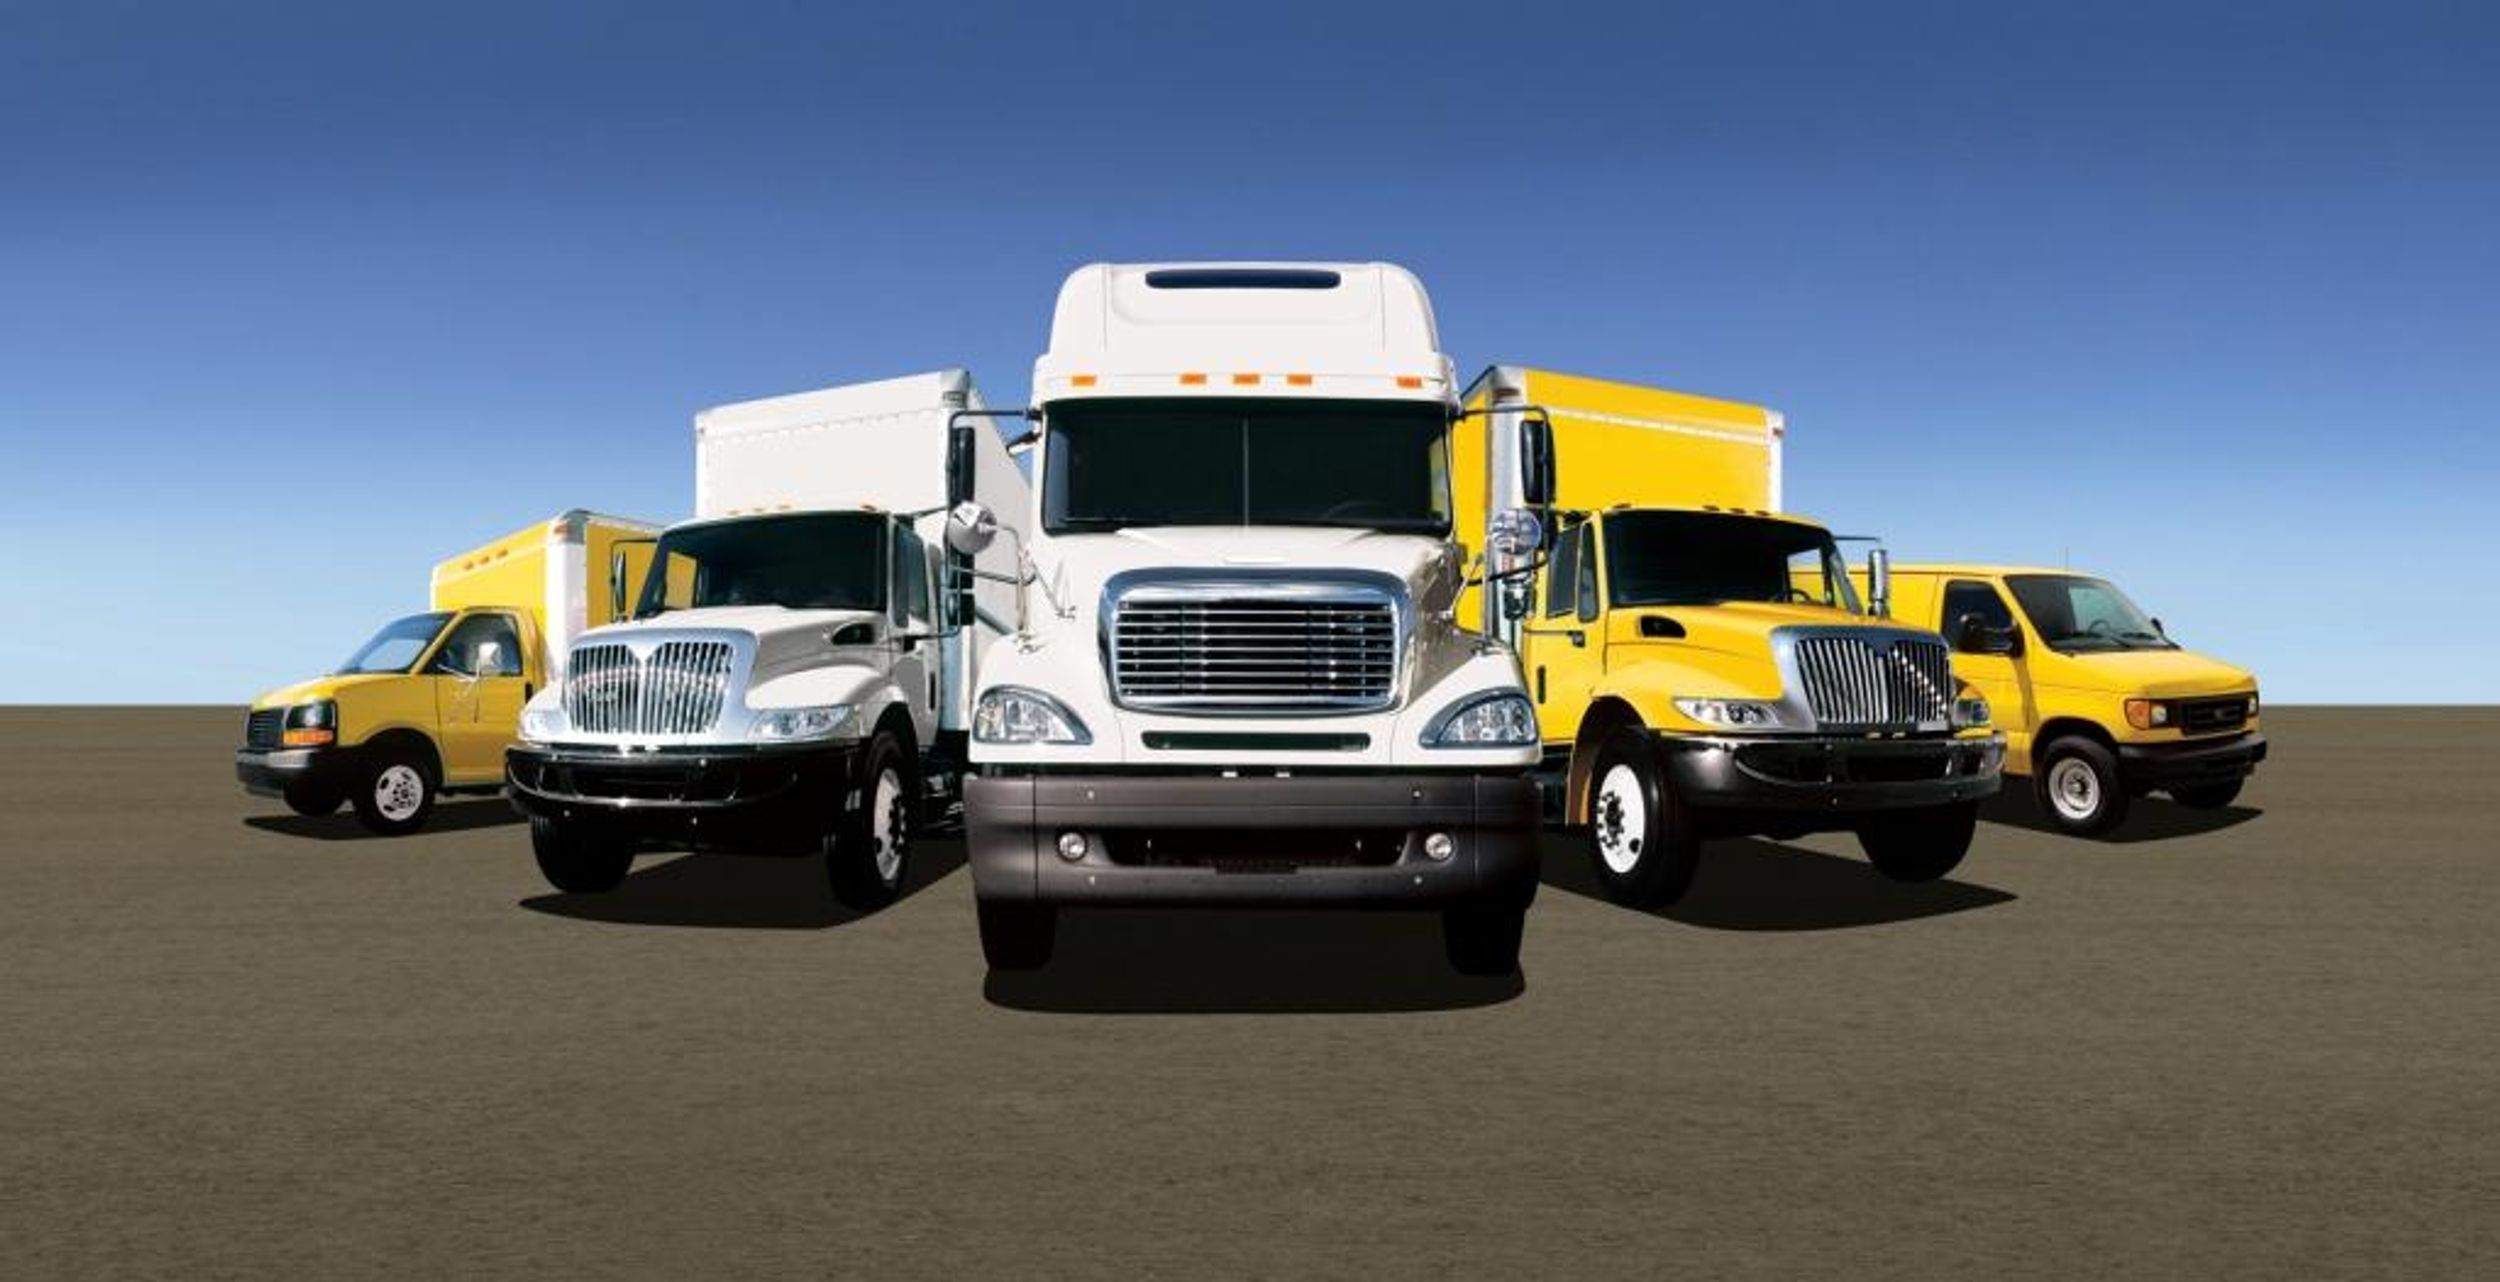 Penske Used Trucks Offers New Roadside Assistance & Warranty